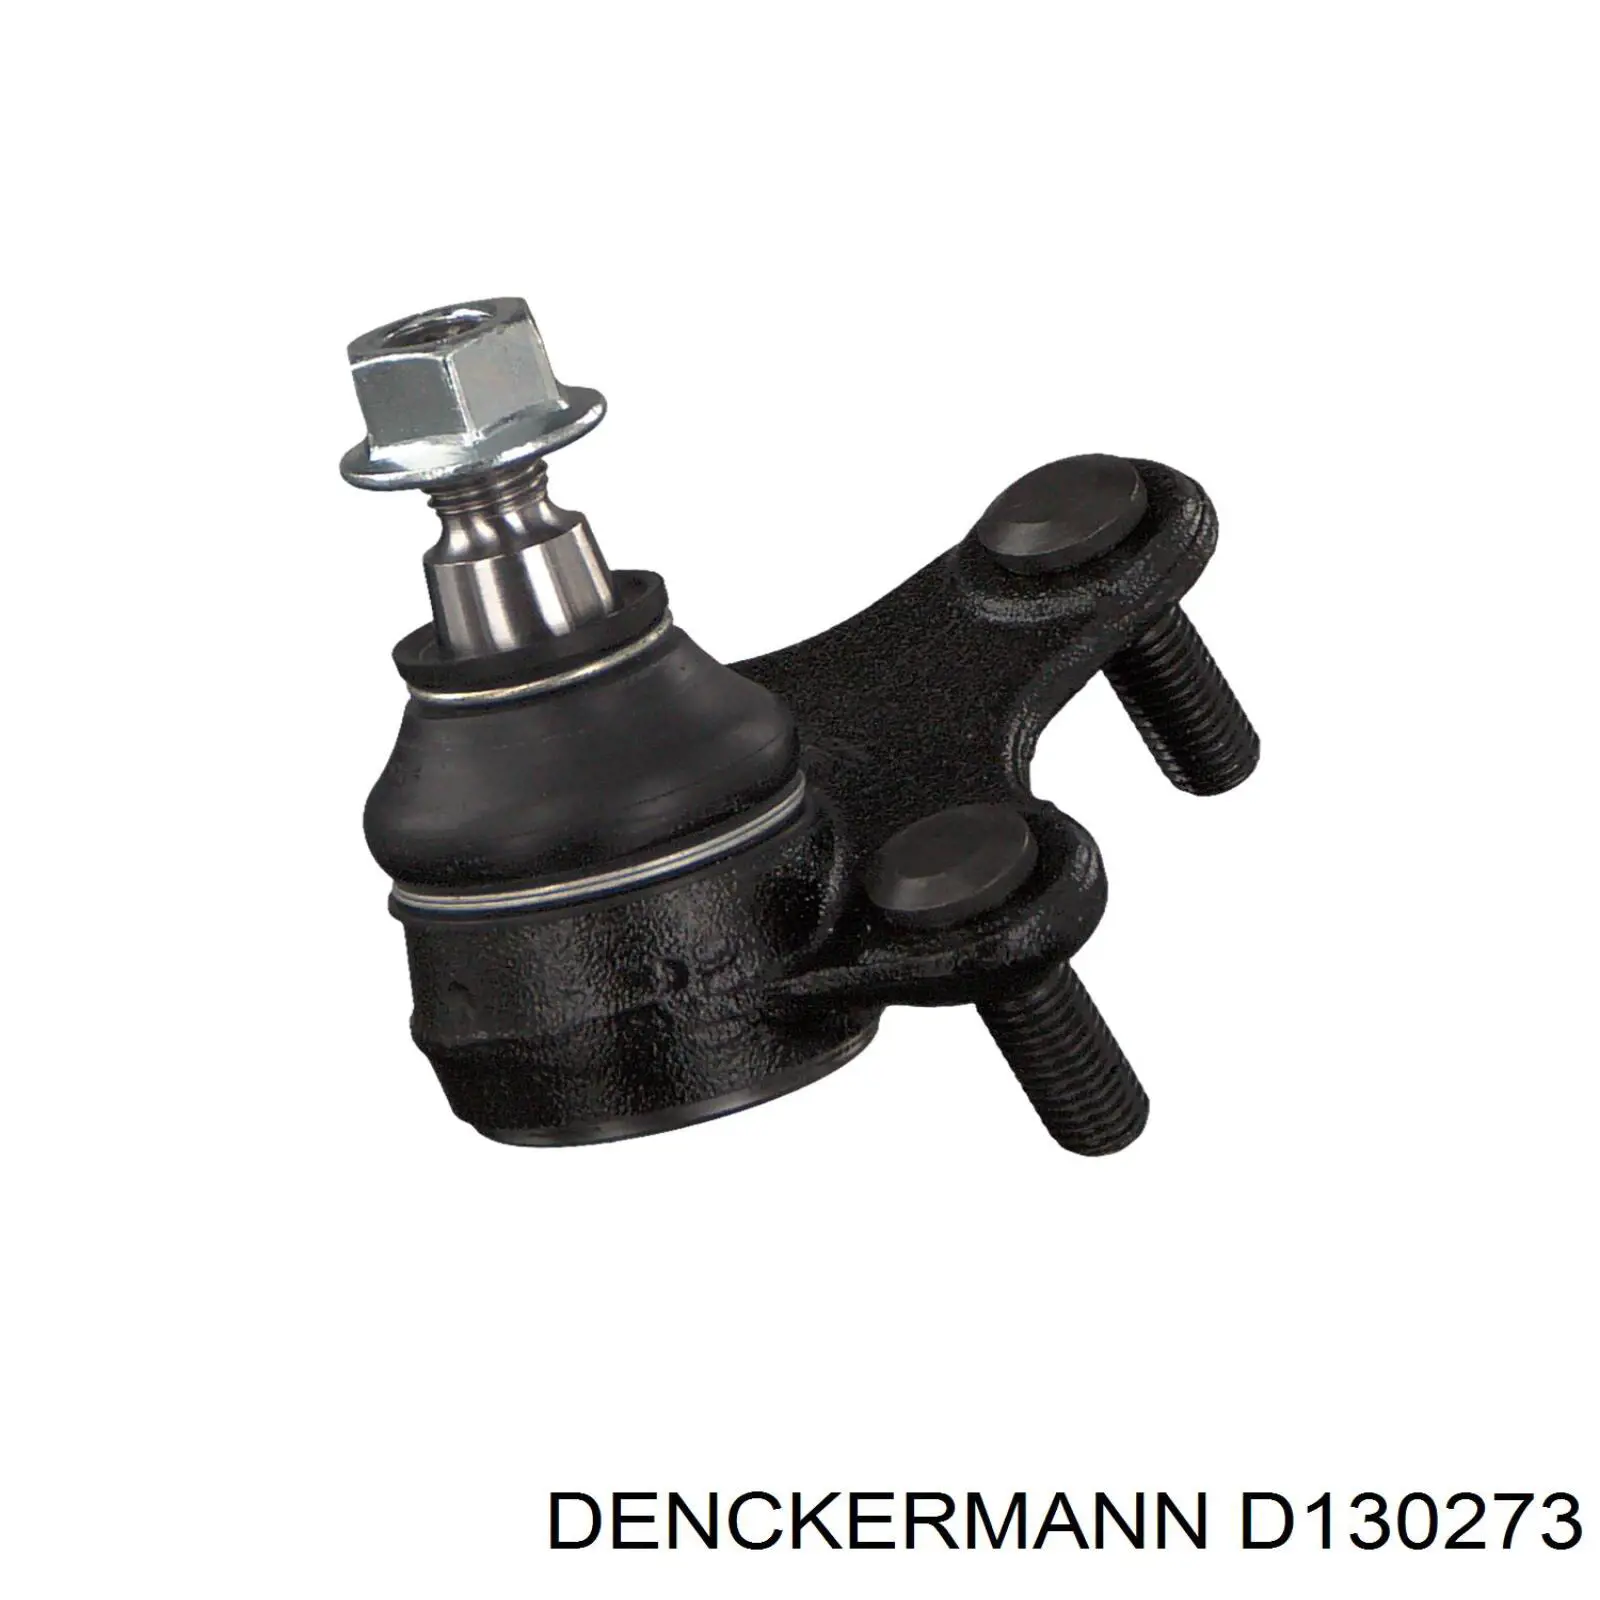 D130273 Denckermann rótula de suspensión inferior derecha